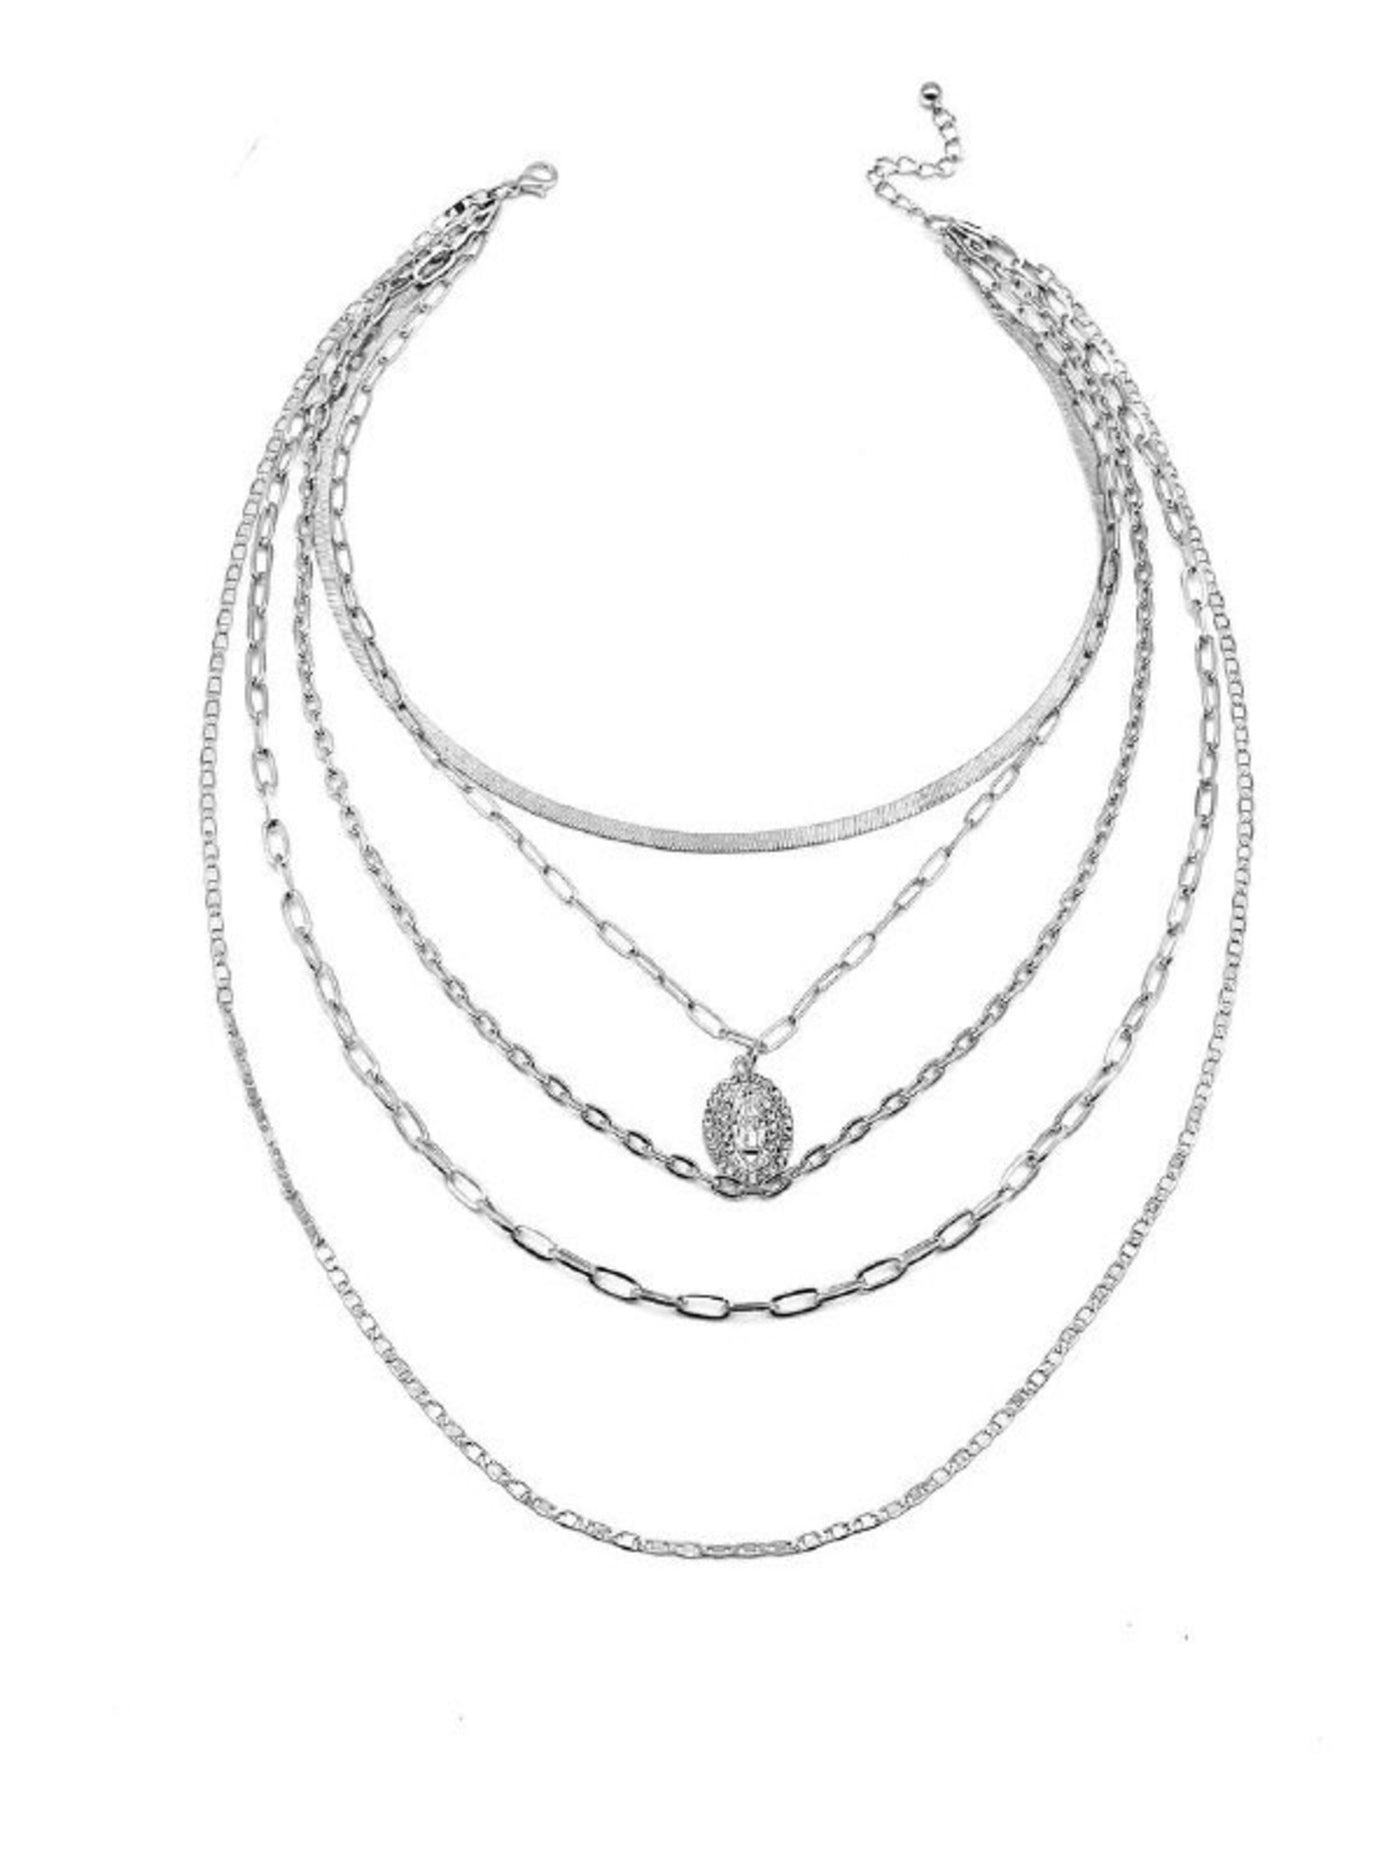 Necklace - Pendant - 5 Chains